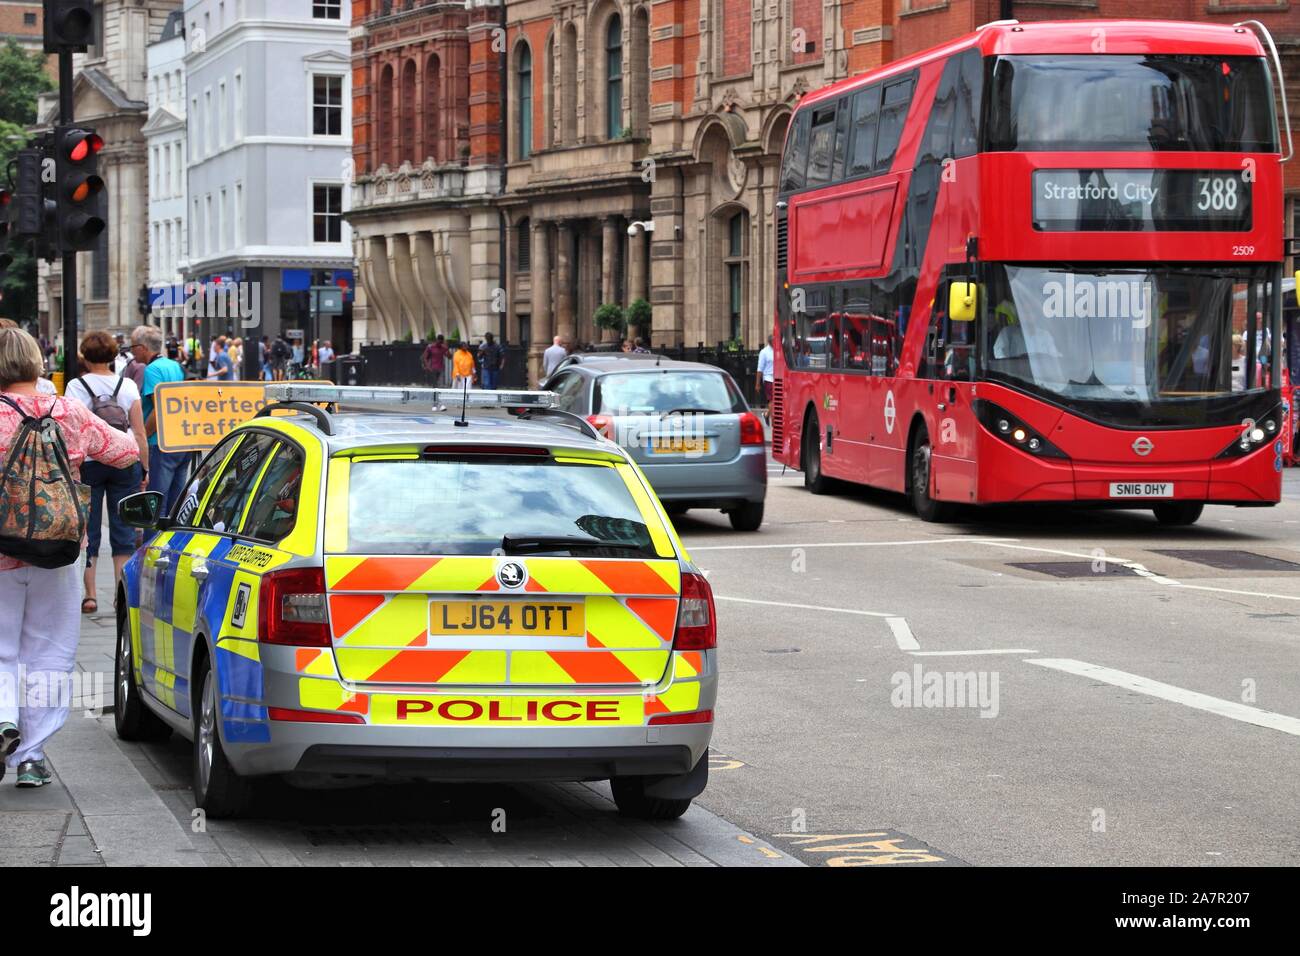 LONDON, Regno Unito - 13 luglio 2019: auto della polizia nella città di Londra. La Metropolitan Police Service ha 31.000 funzionari di polizia in una maggiore area di Londra. Foto Stock